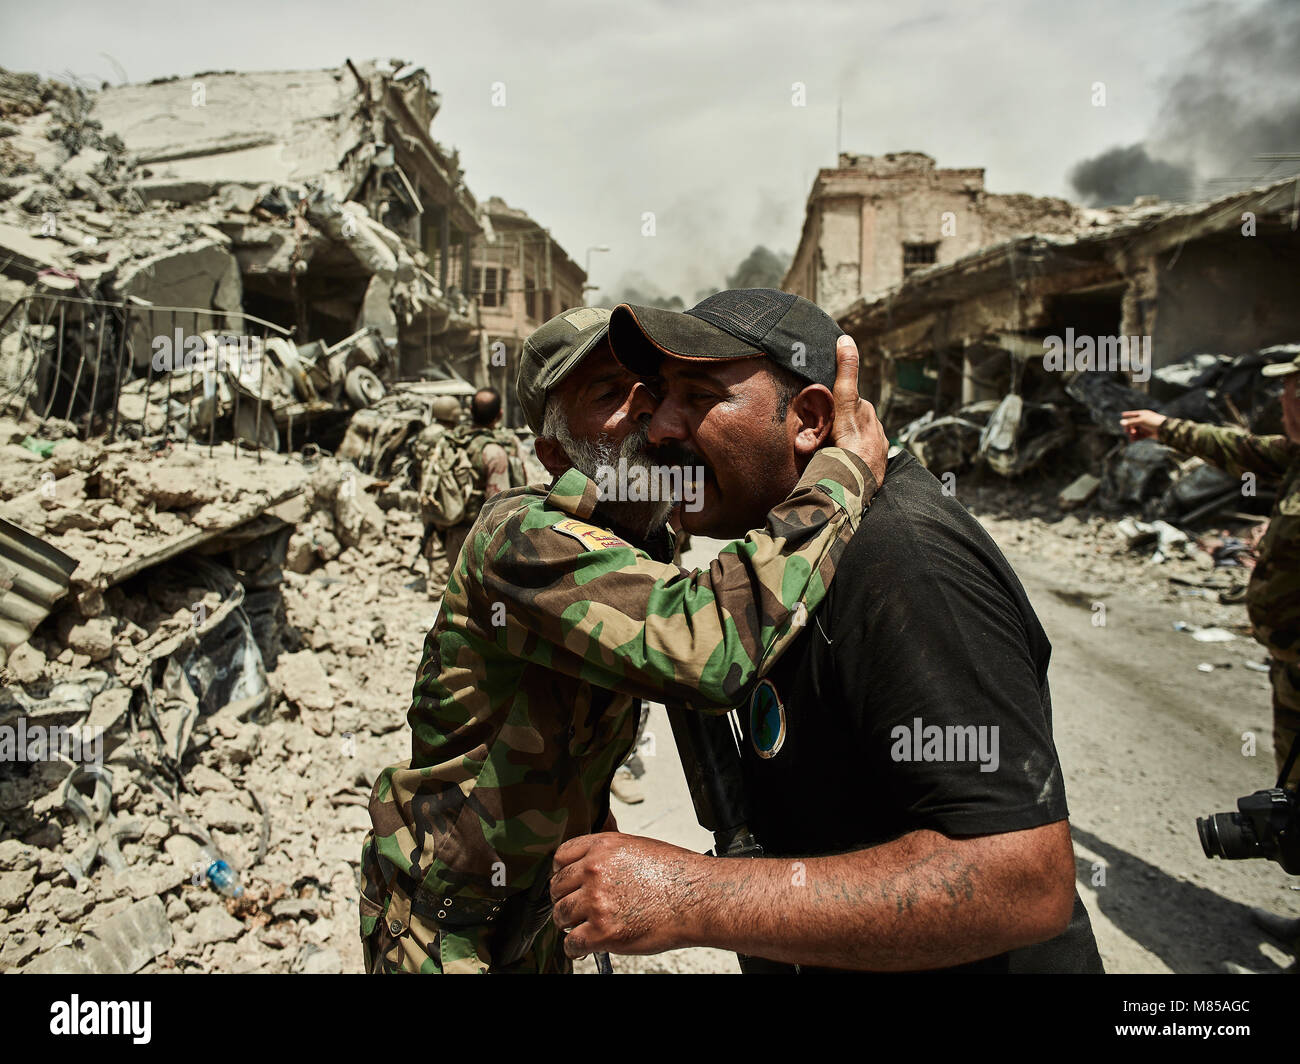 Zwei irakische Männer feiern die Befreiung von Mosul. Die Stadt Mosul im Nordirak hat unter islamischen Staat militanten wurde für 3 Jahre, seit Juni 2014. Im Juli 2017 die Streitkräfte der Koalition geführt von der irakischen Armee hat endlich befreit die Stadt aus der Hand von Terroristen. Stockfoto